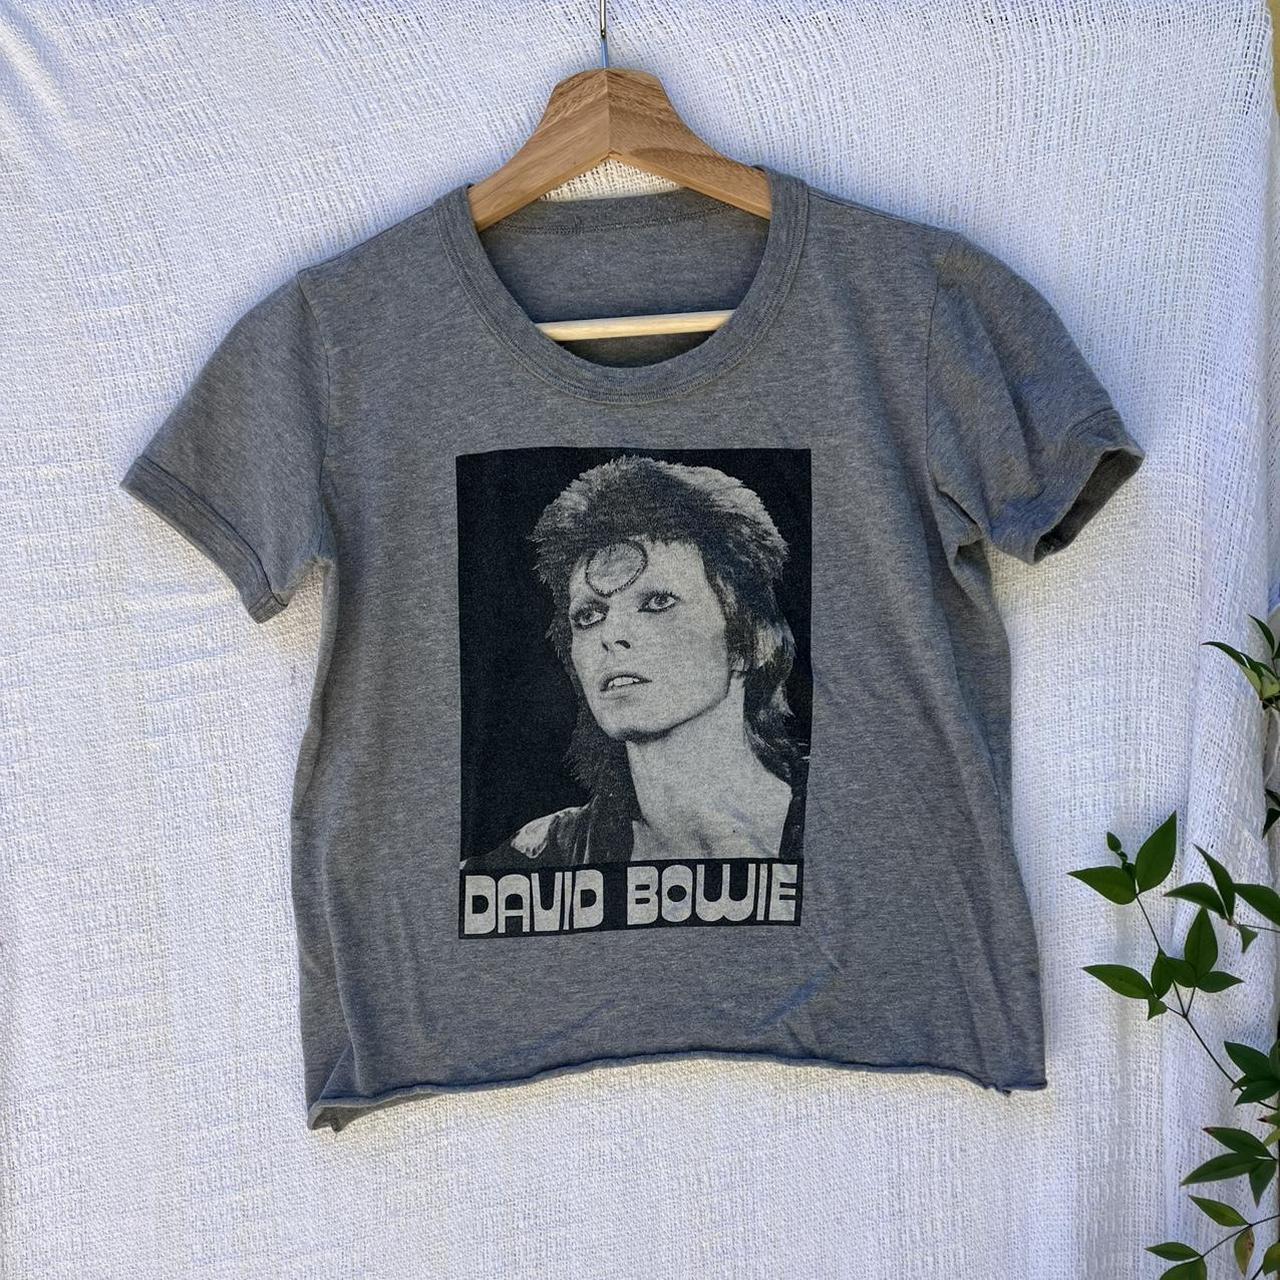 Product Image 1 - Vintage David Bowie T shirt

It’s